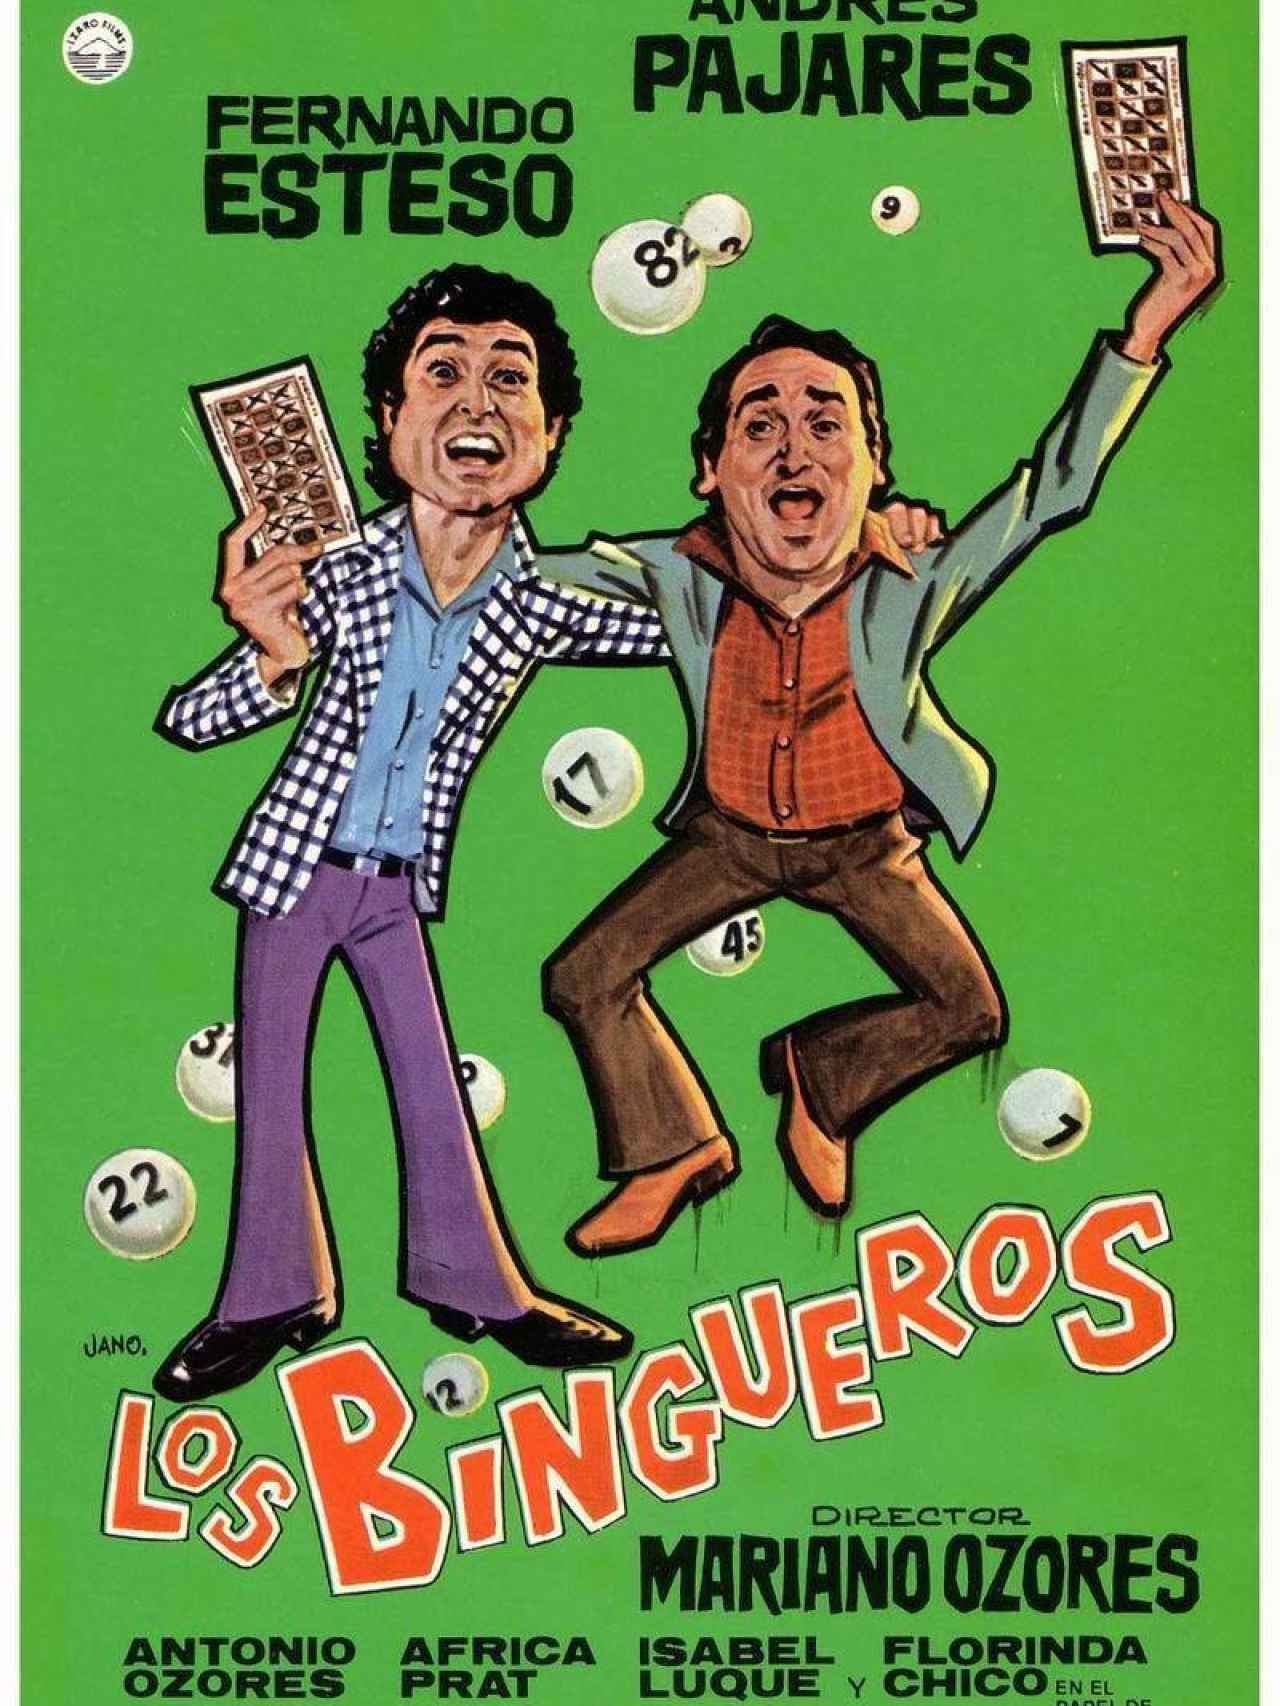 Carátula de la película Los Bingueros.